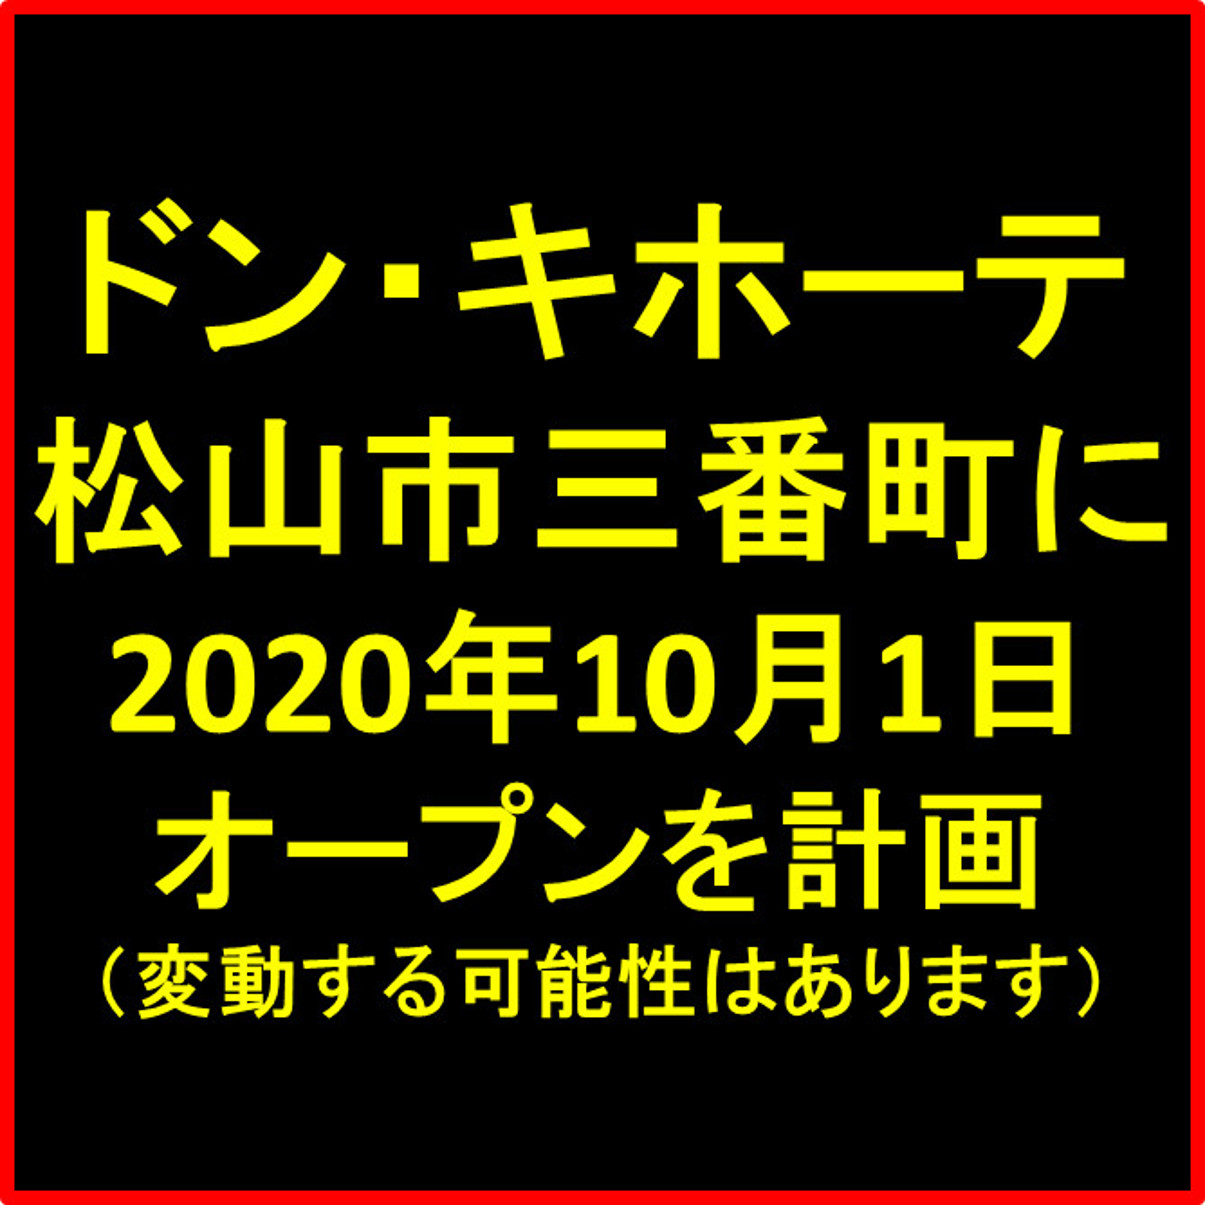 ドンキホーテ松山三番町20201001オープン計画アイキャッチ1205